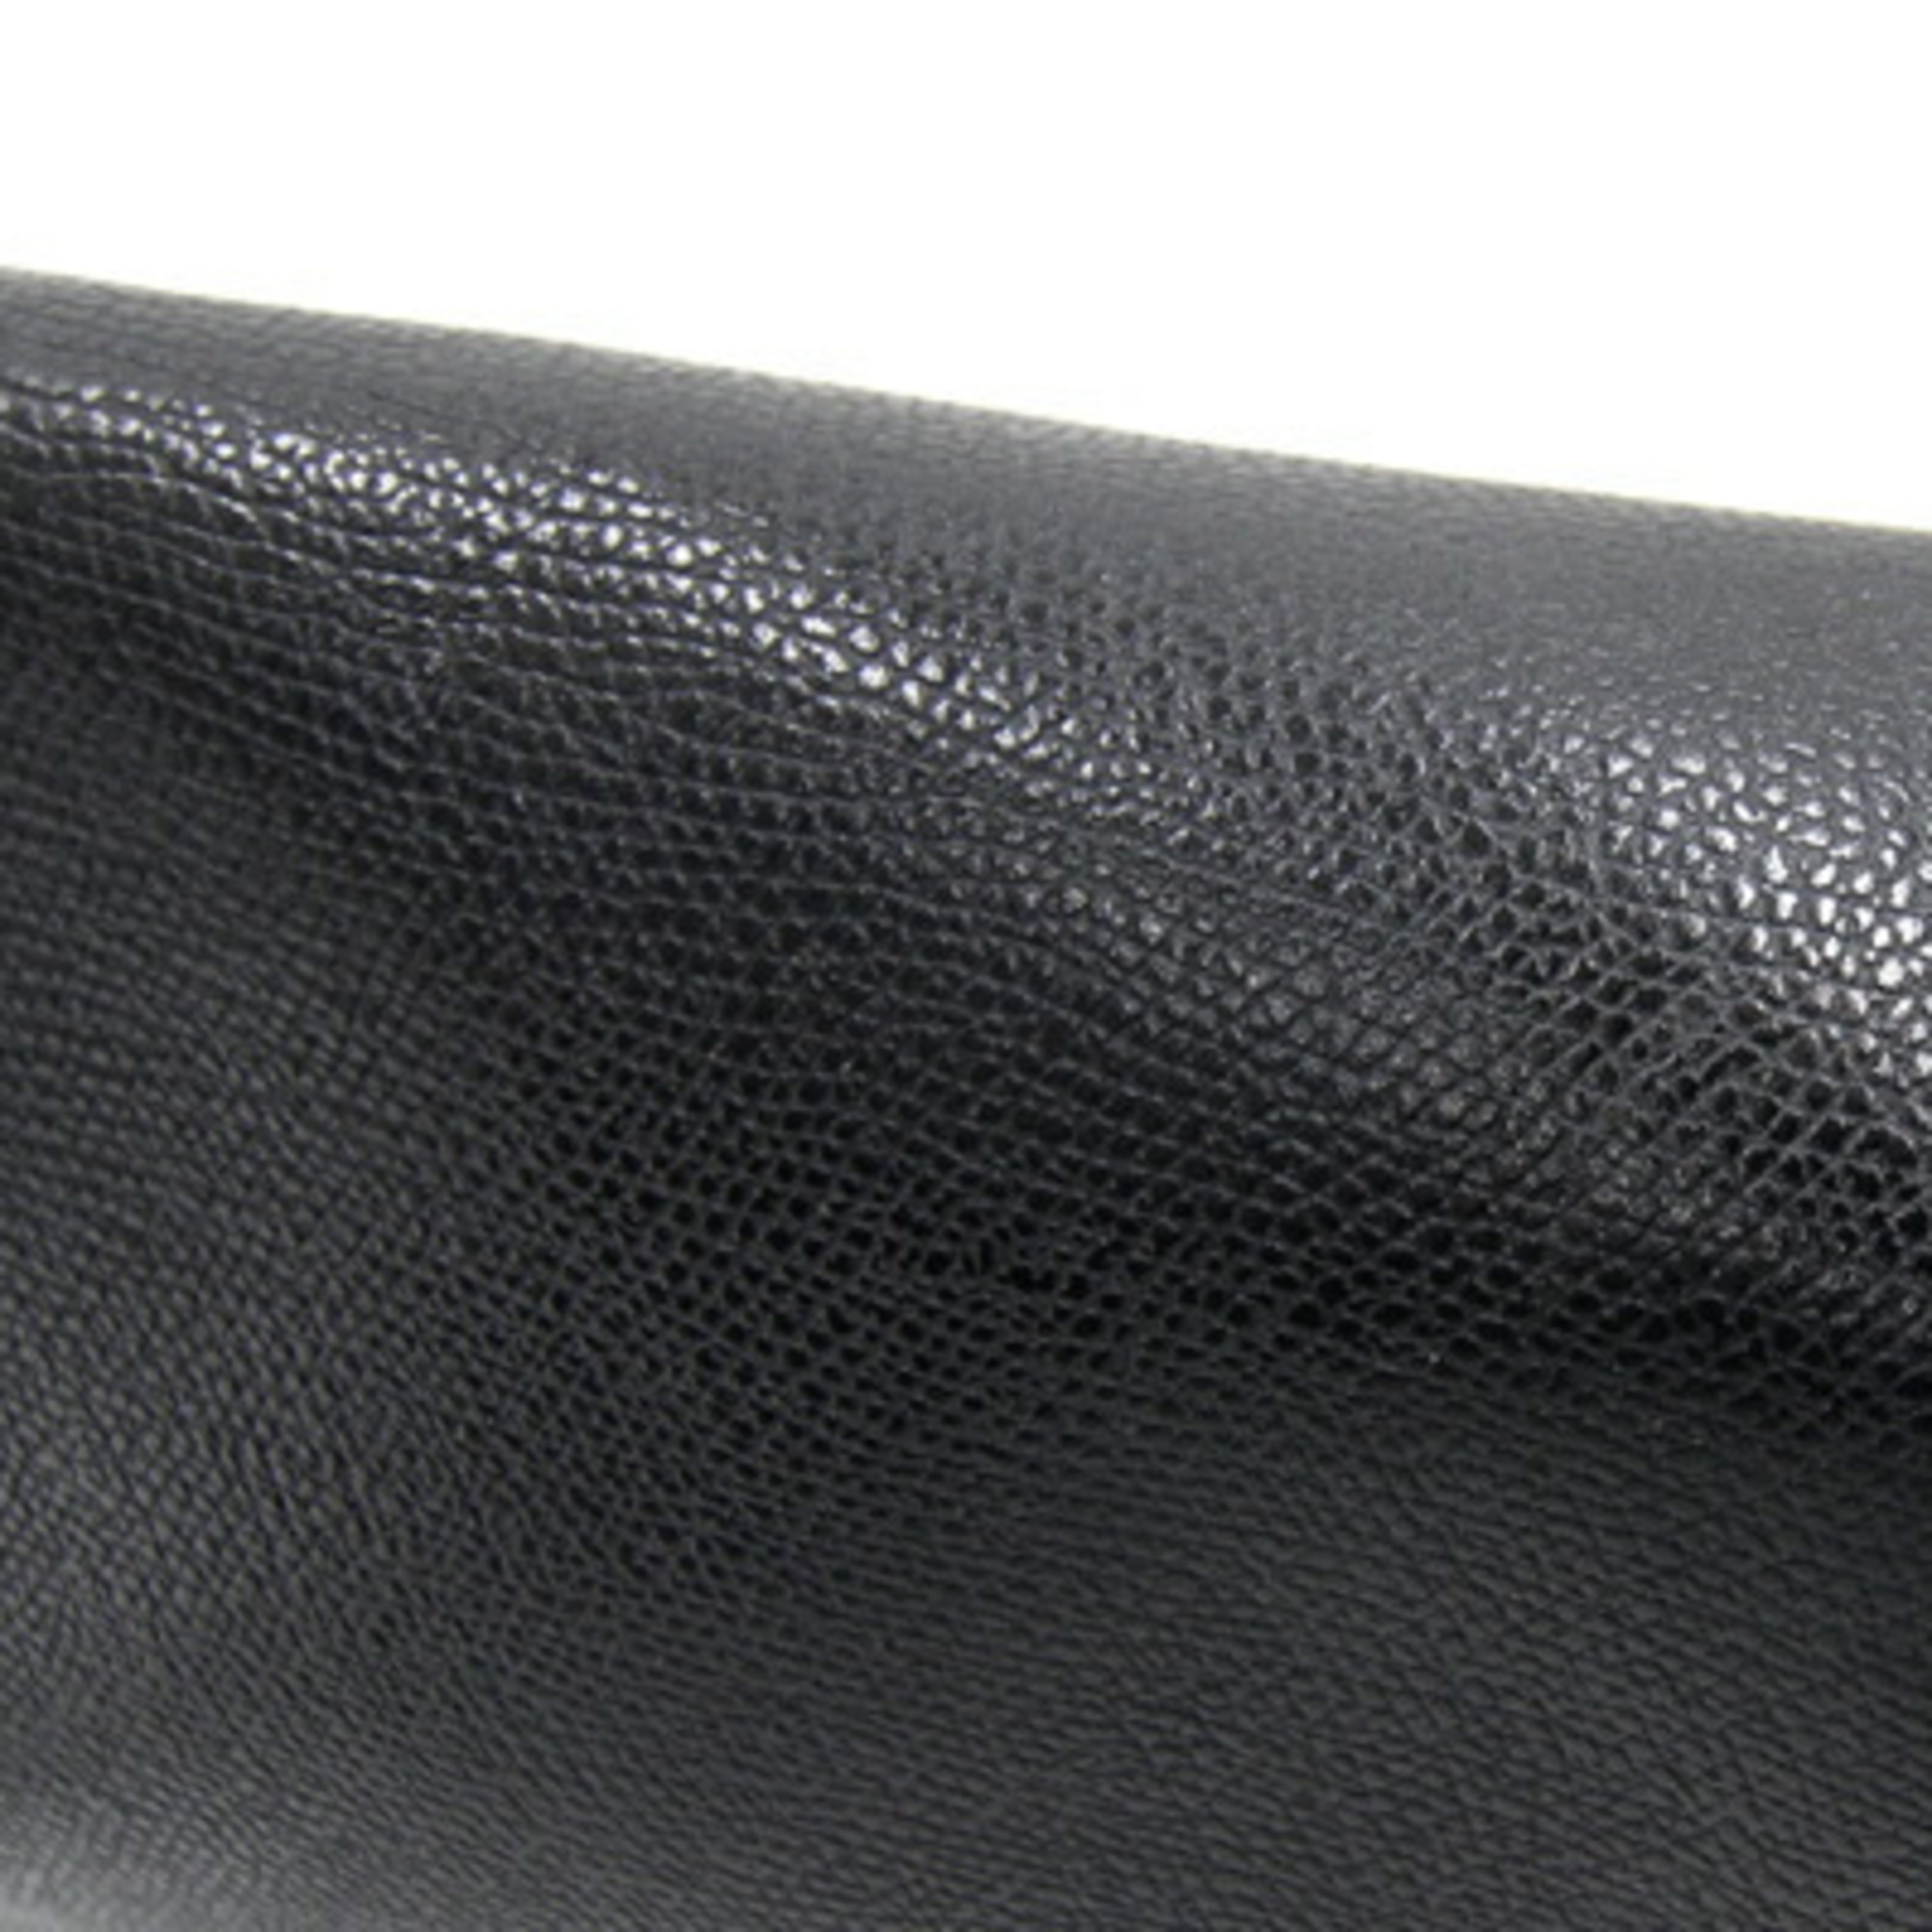 Valextra Bag Shoulder Black Women's Leather